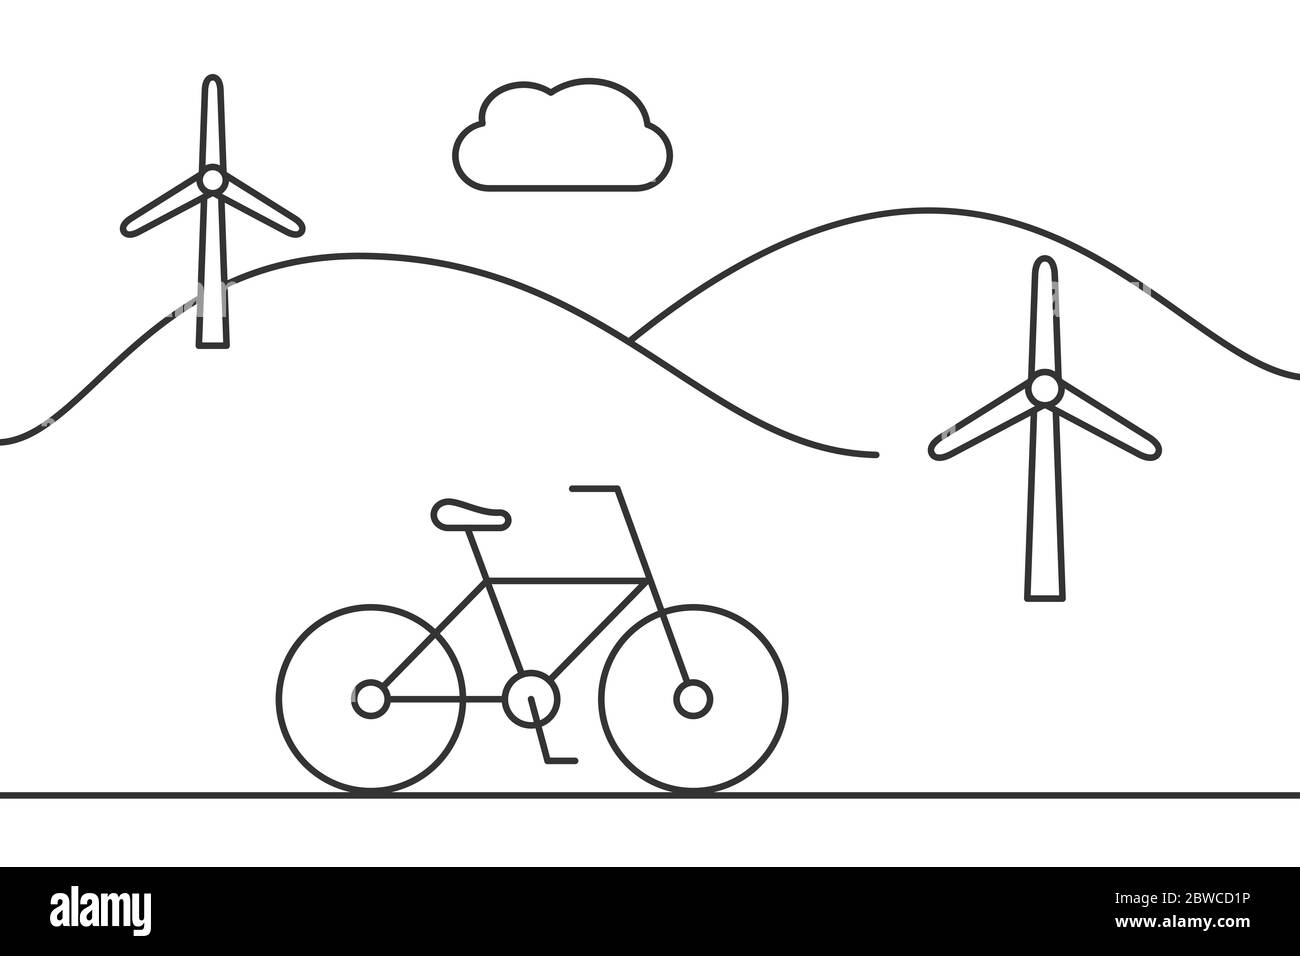 Fahrrad mit Leitungssymbolen für Windenergieanlagen. Landschaft mit Hügeln und Windmühlen. Grüne Energie und nachhaltiges Lifestyle-Konzept. Schwarze Umrandung auf Weiß Stock Vektor